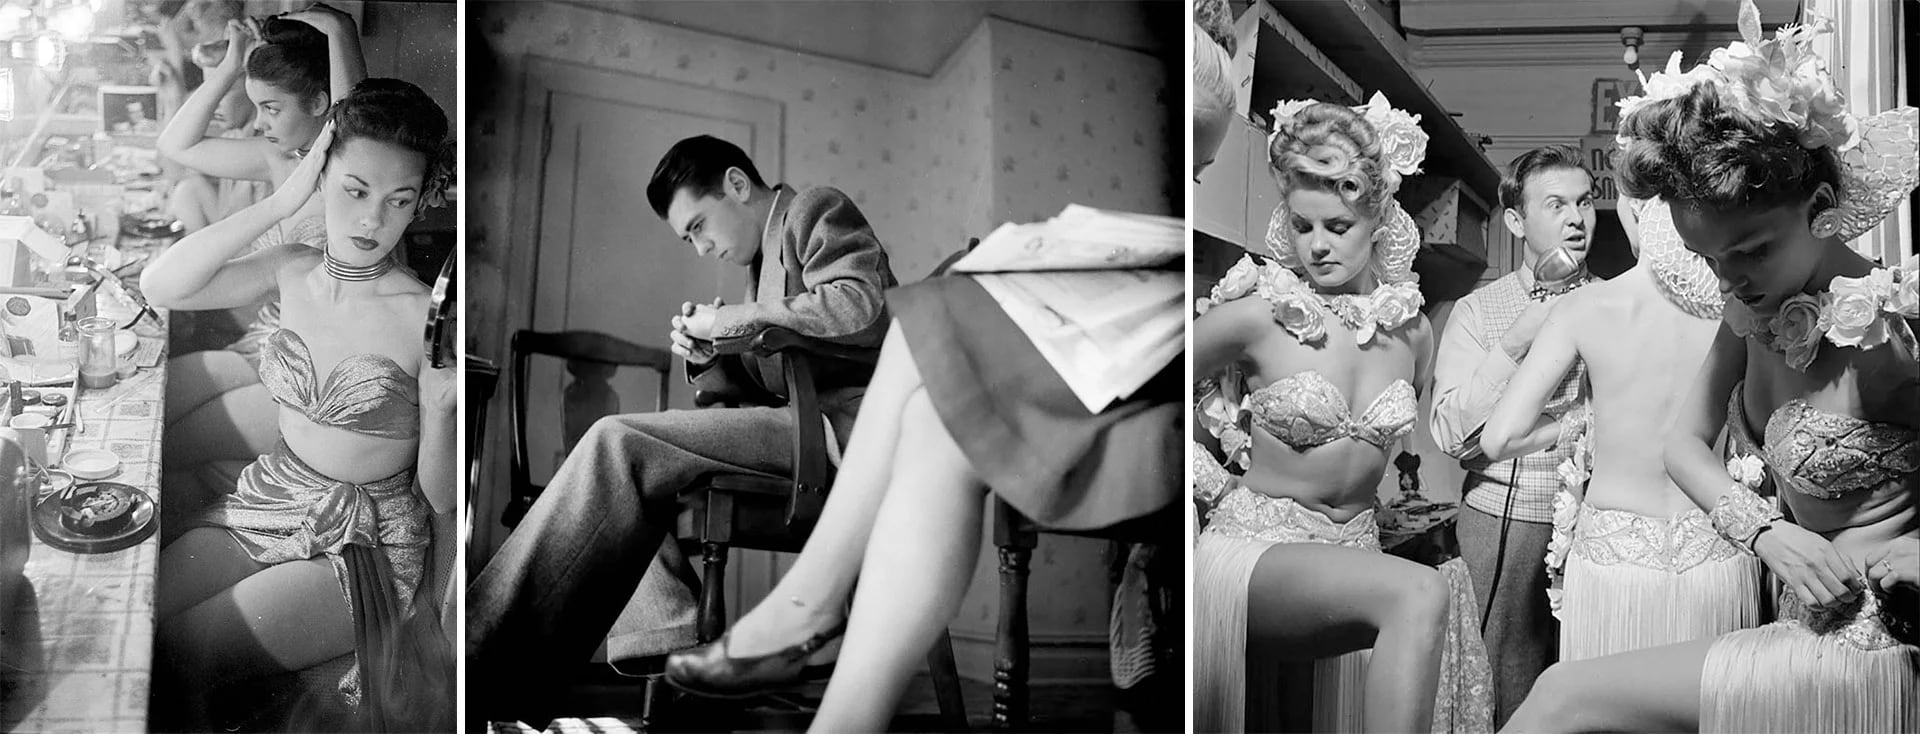 “Chicas del Copacabana” (1948), Esperando al dentista (1947) y Johnny Grant (1946)